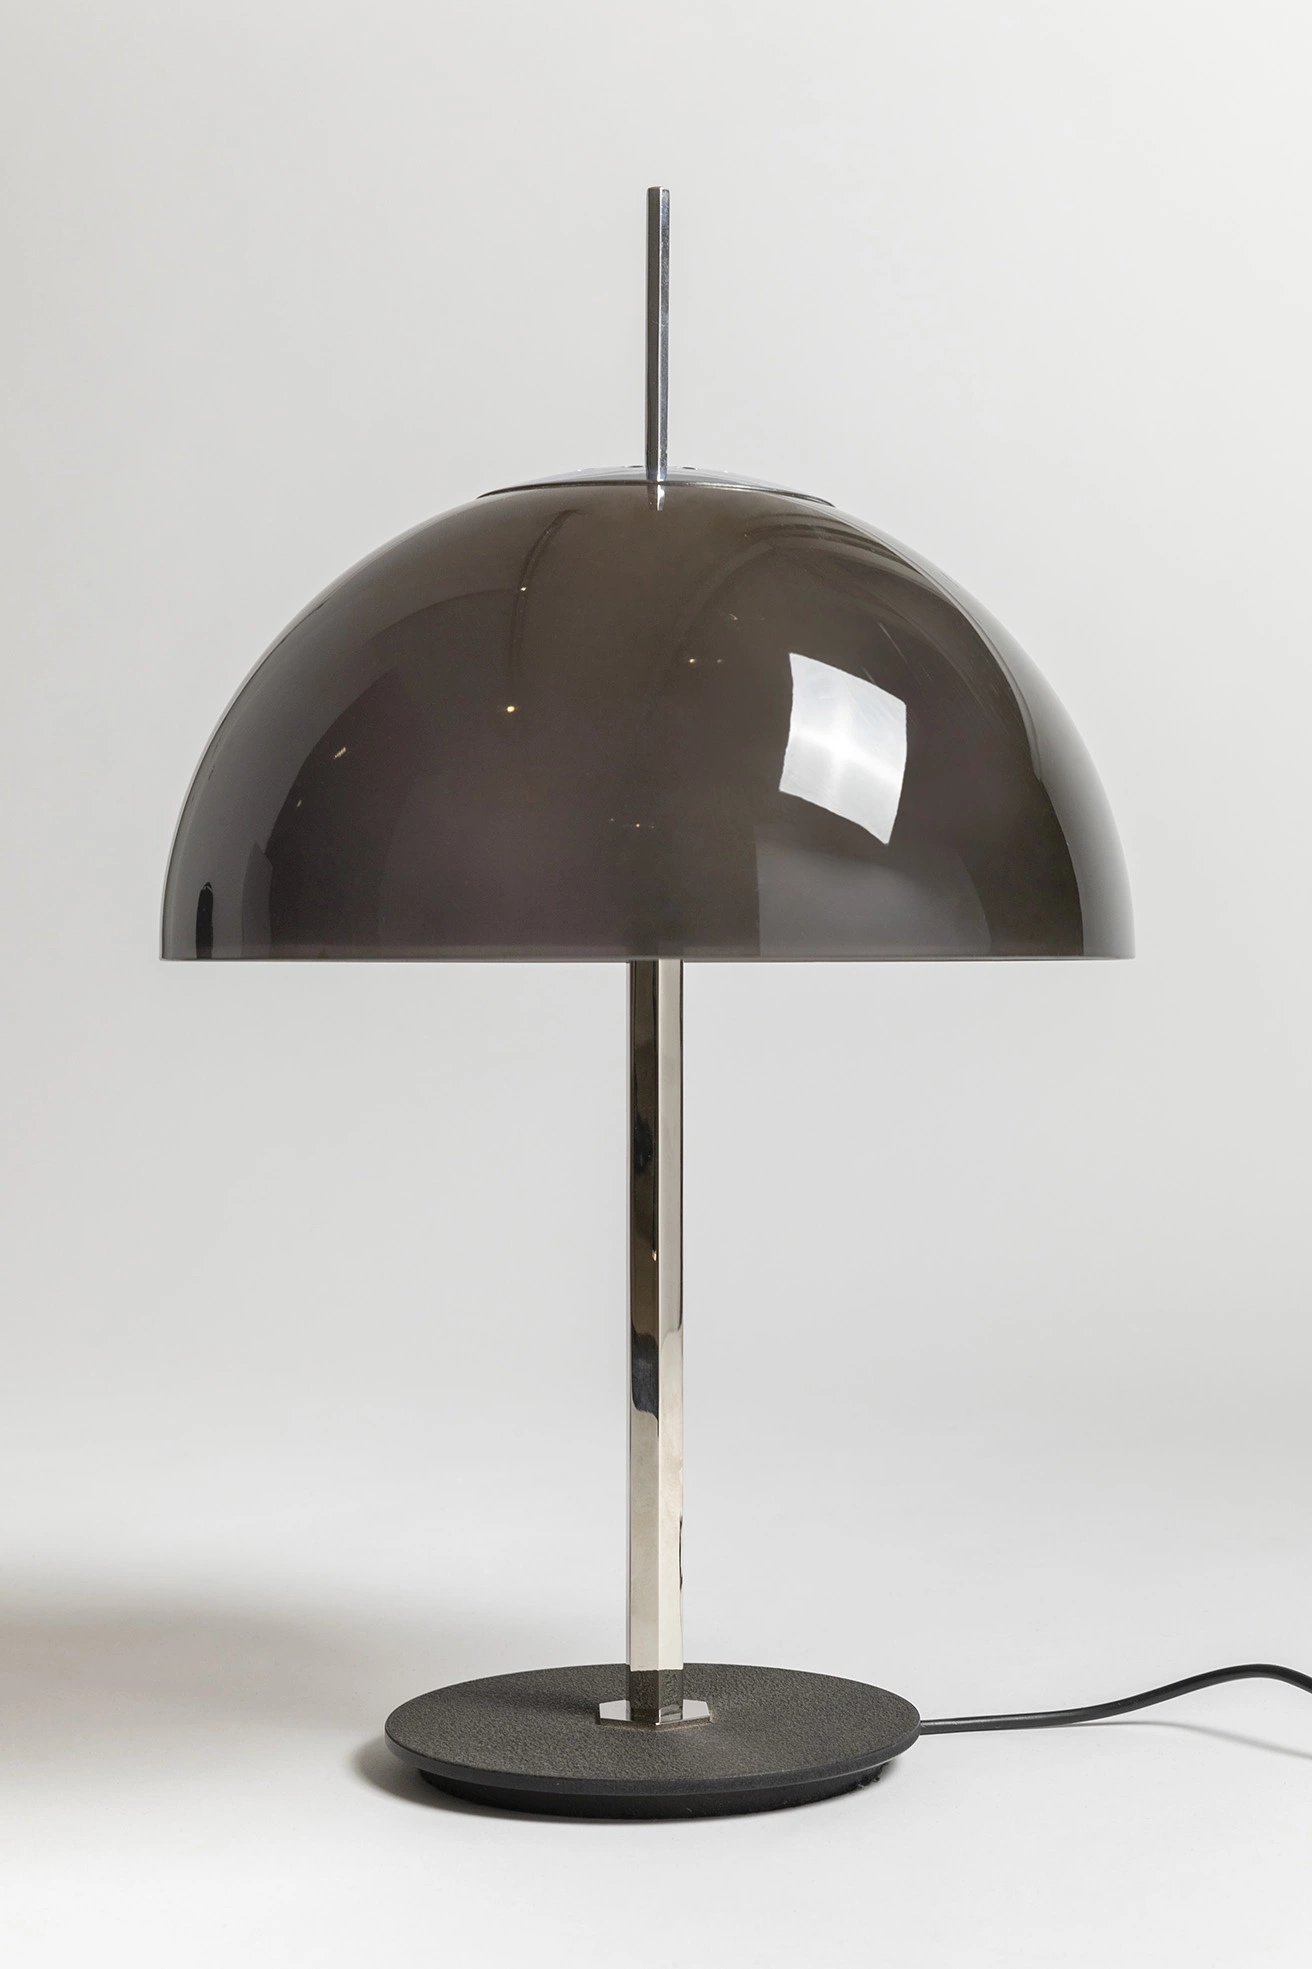 584/G (grey) - Gino Sarfatti - Table light - Galerie kreo